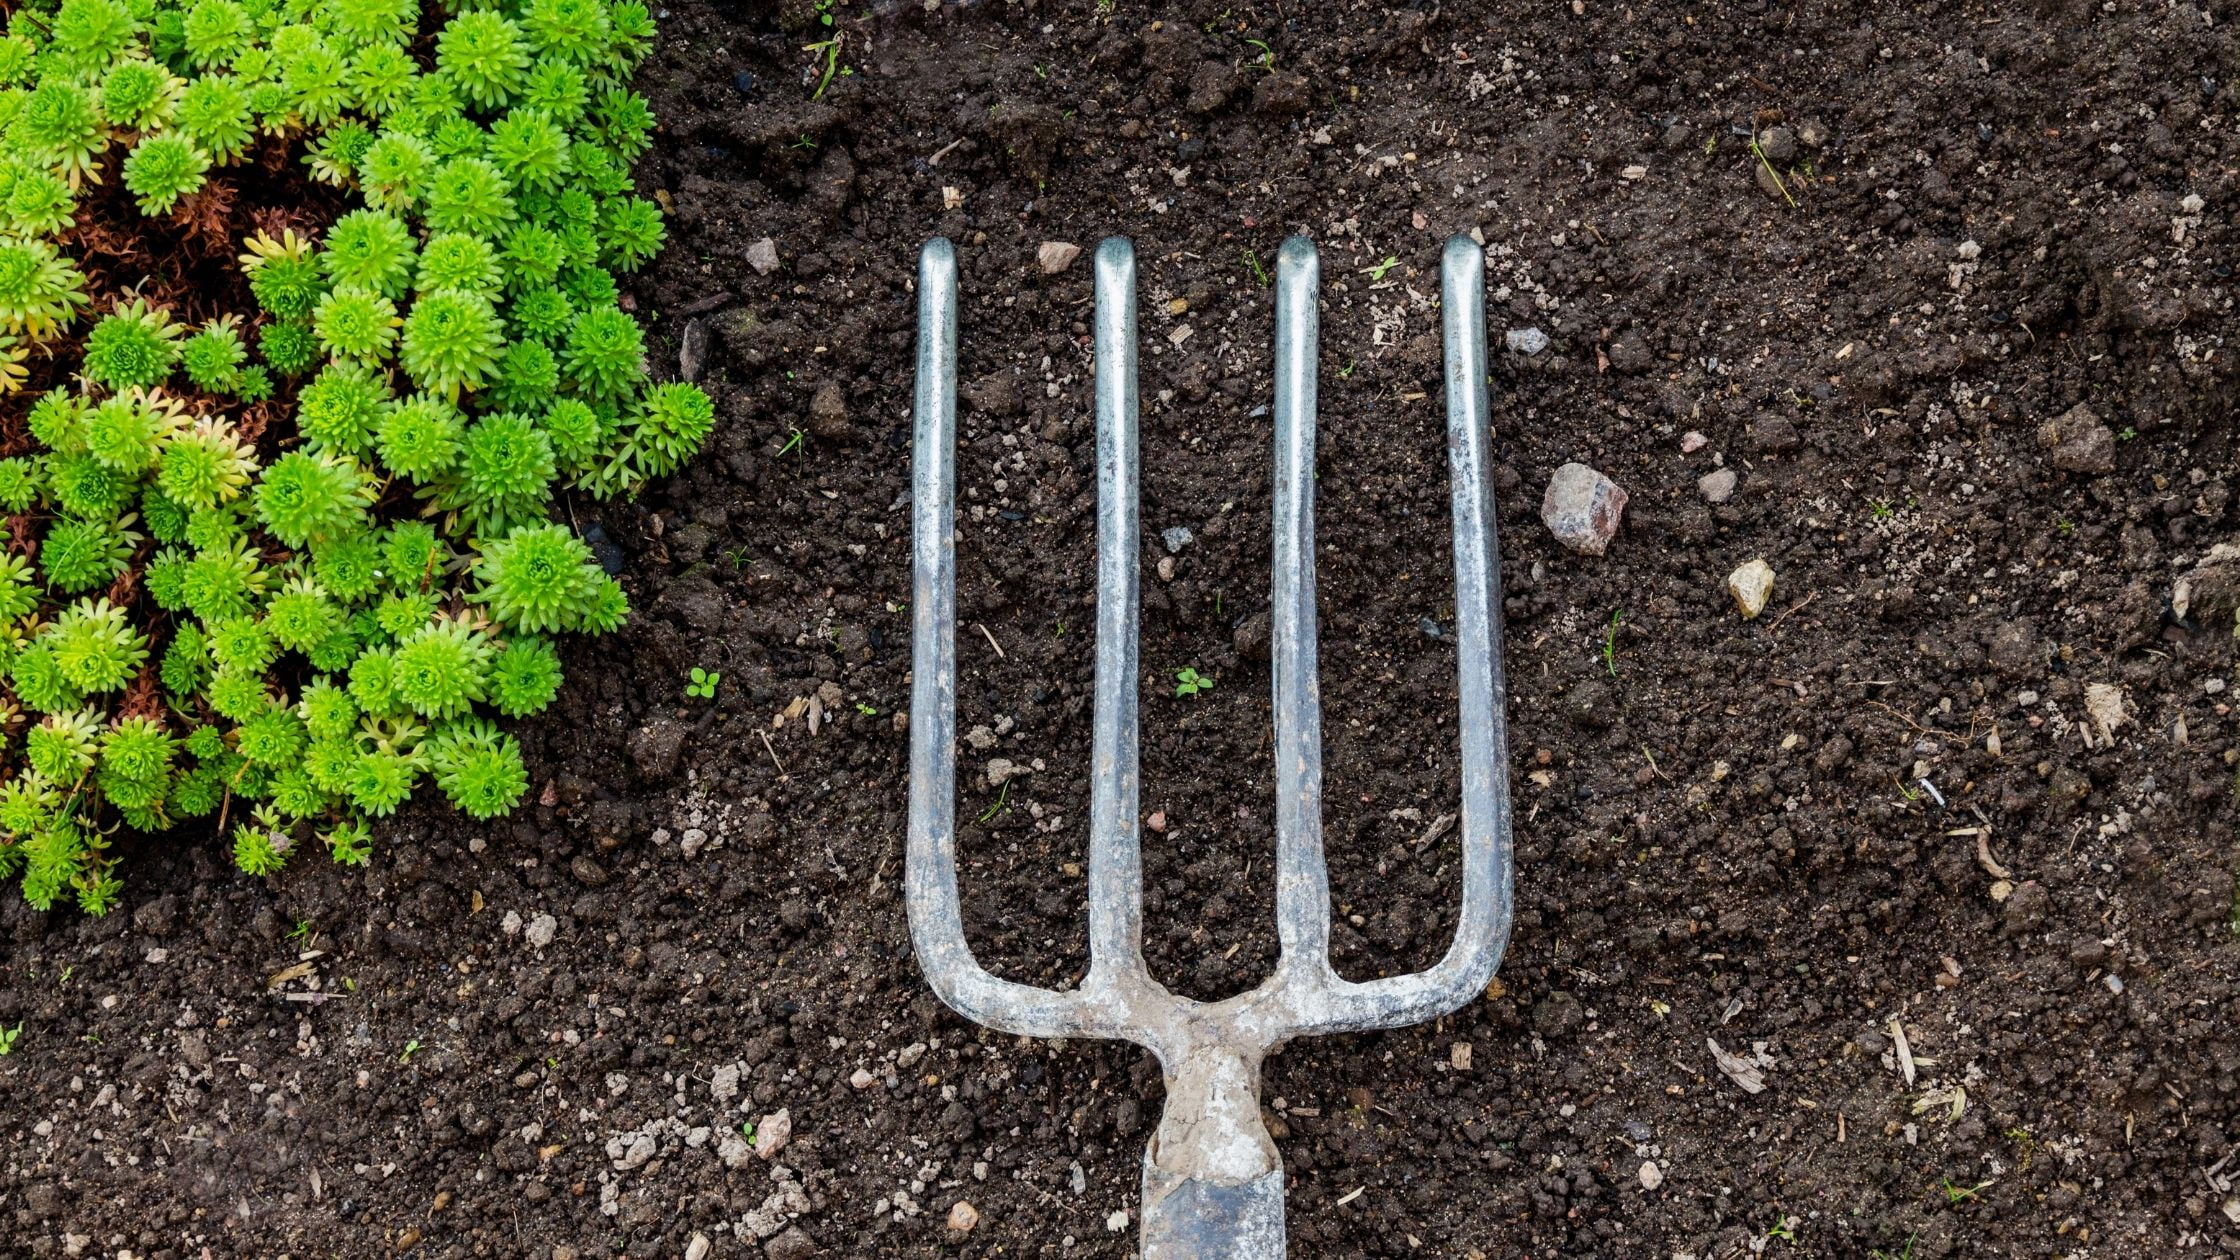 Types of garden knives: Garden fork